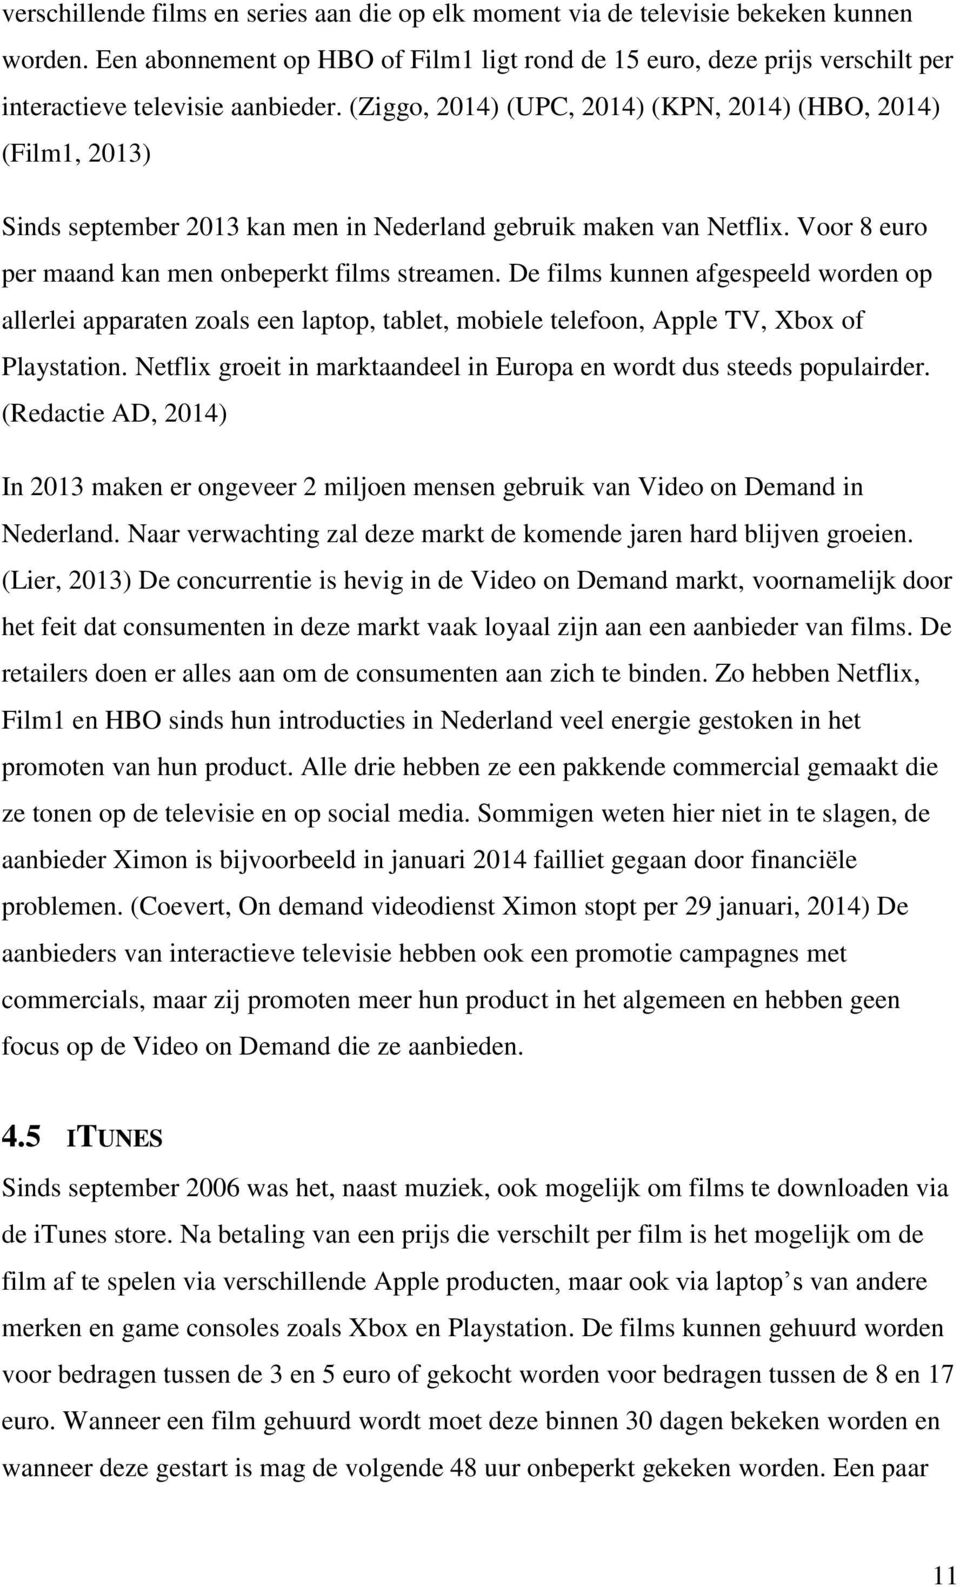 (Ziggo, 2014) (UPC, 2014) (KPN, 2014) (HBO, 2014) (Film1, 2013) Sinds september 2013 kan men in Nederland gebruik maken van Netflix. Voor 8 euro per maand kan men onbeperkt films streamen.